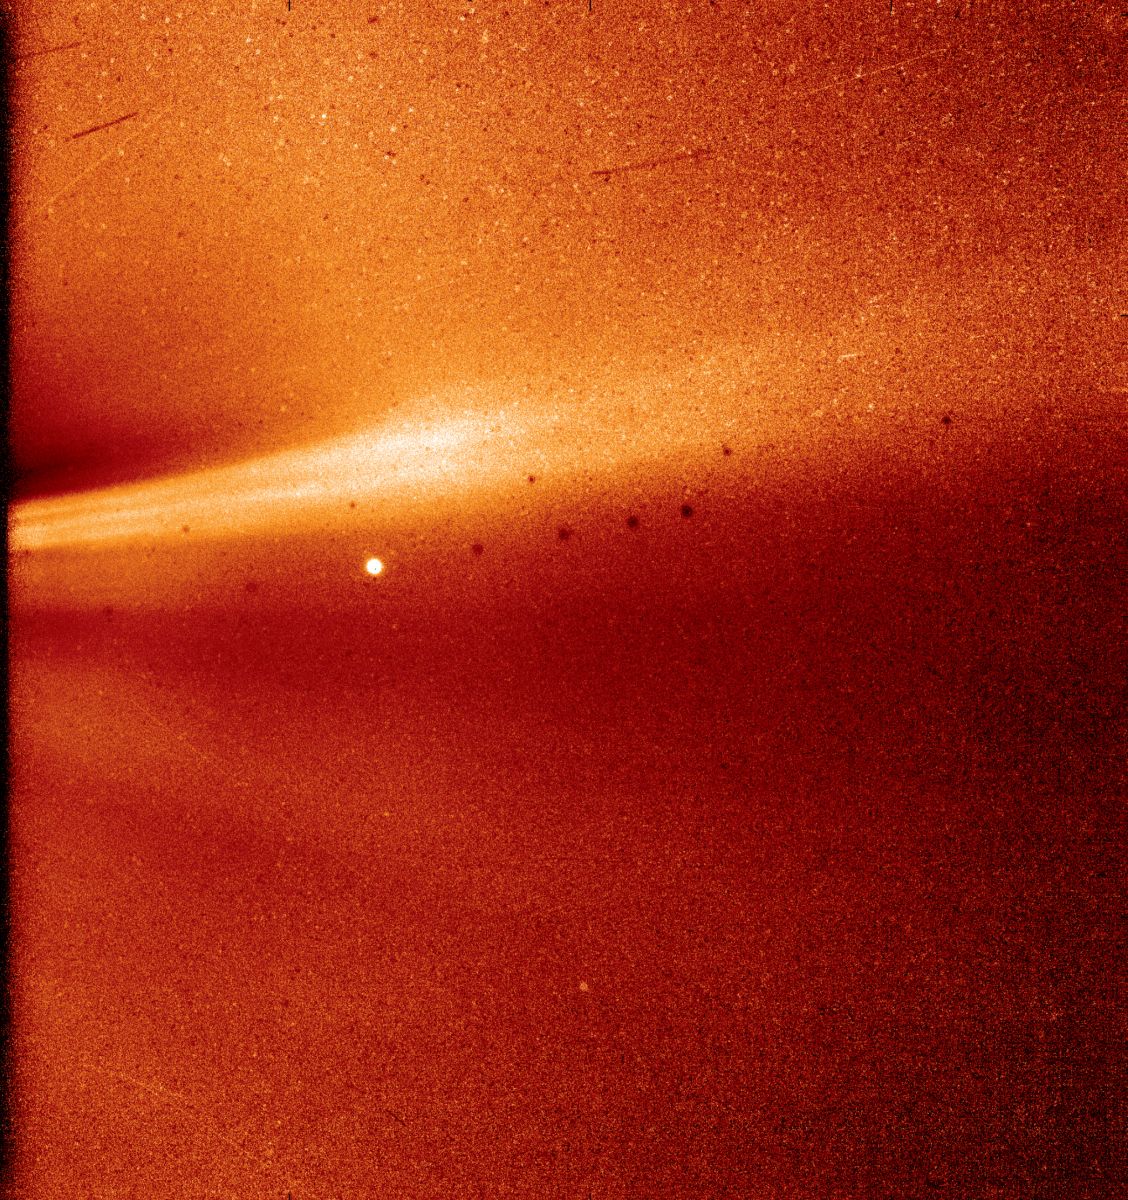 Слева на фото четко видны два корональные стримеры. Яркое пятно вдали — Юпитер, а черные точки — артефакты фоновой коррекции